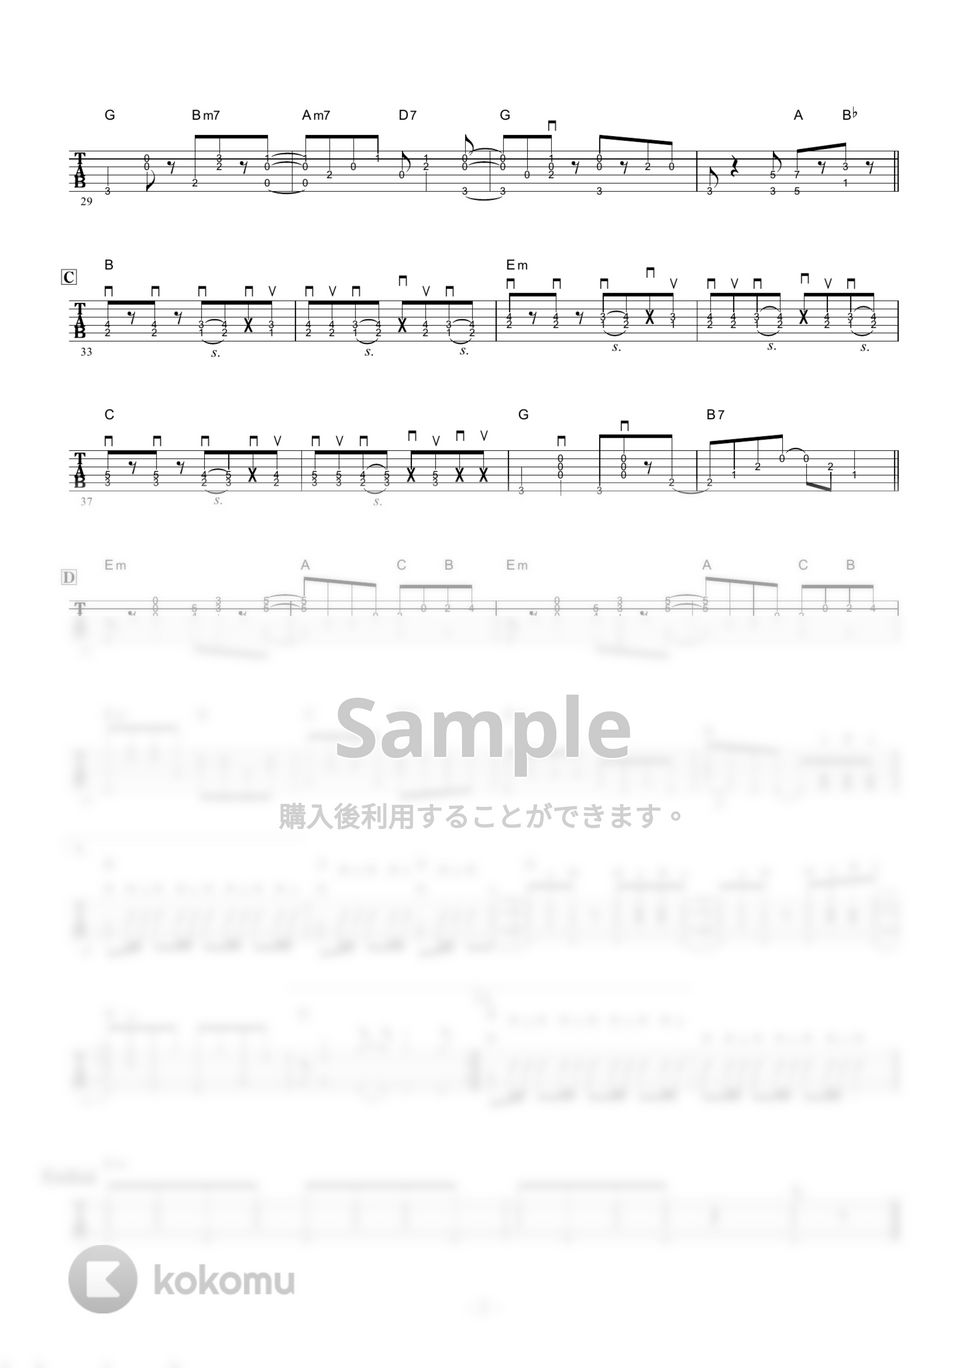 ピンクレディー - 渚のシンドバッド (ギター伴奏/イントロ・間奏ソロギター) by 伴奏屋TAB譜